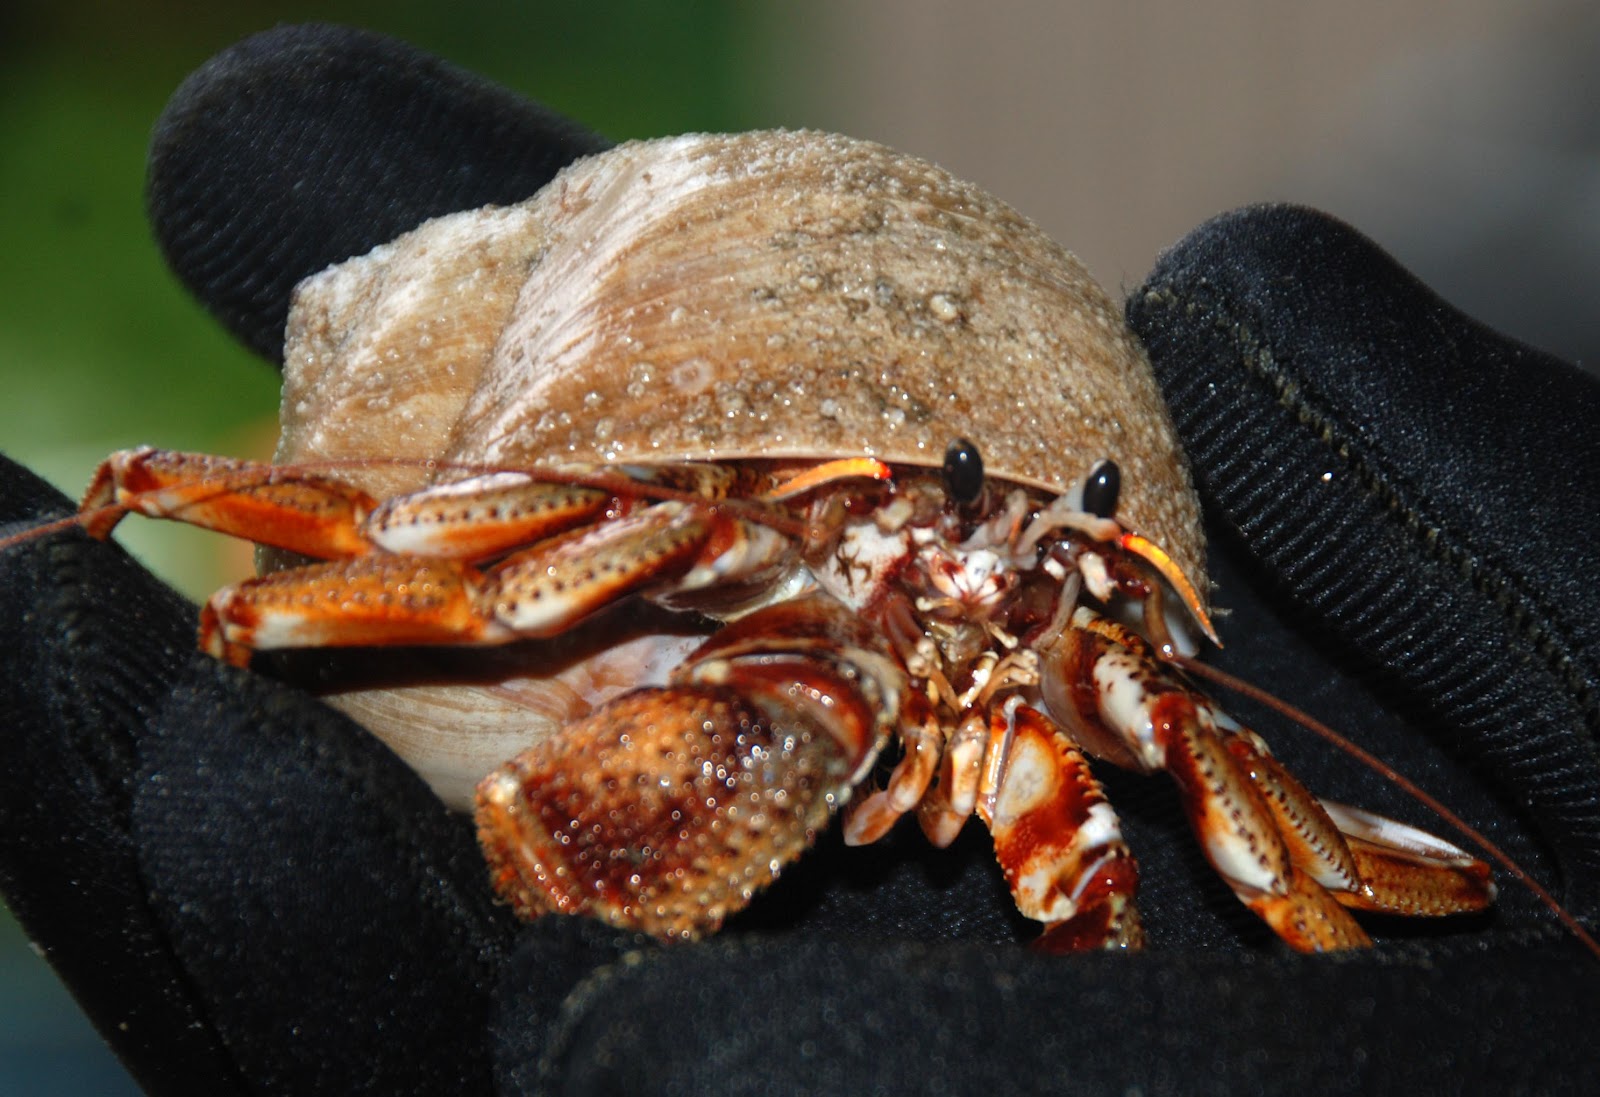 Point Richmond Beach News: Giant Hermit Crab found off Beach!